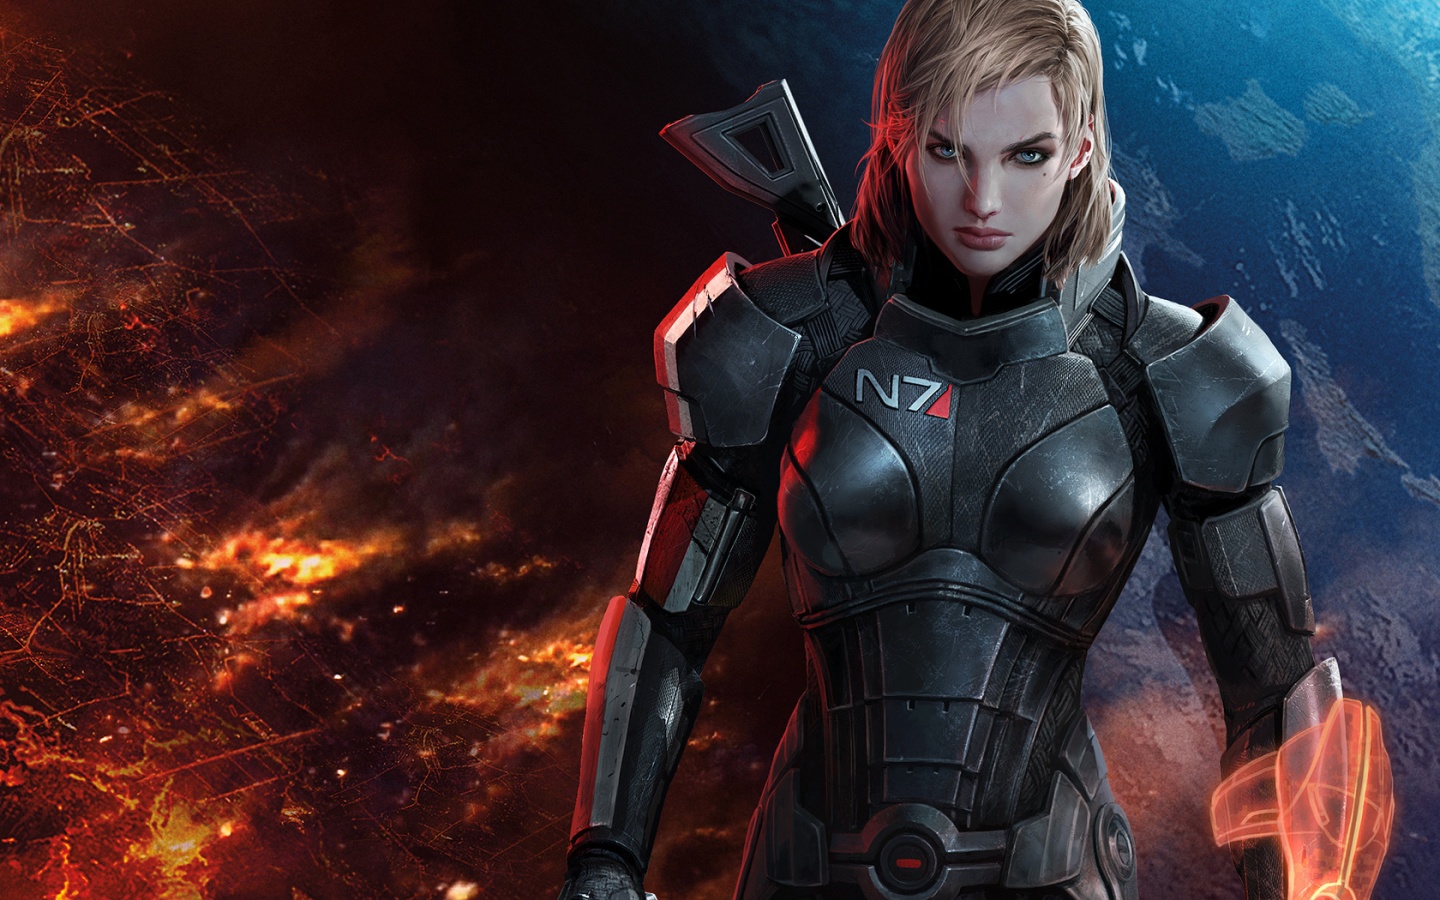 Mass Effect Femshep Wallpaper